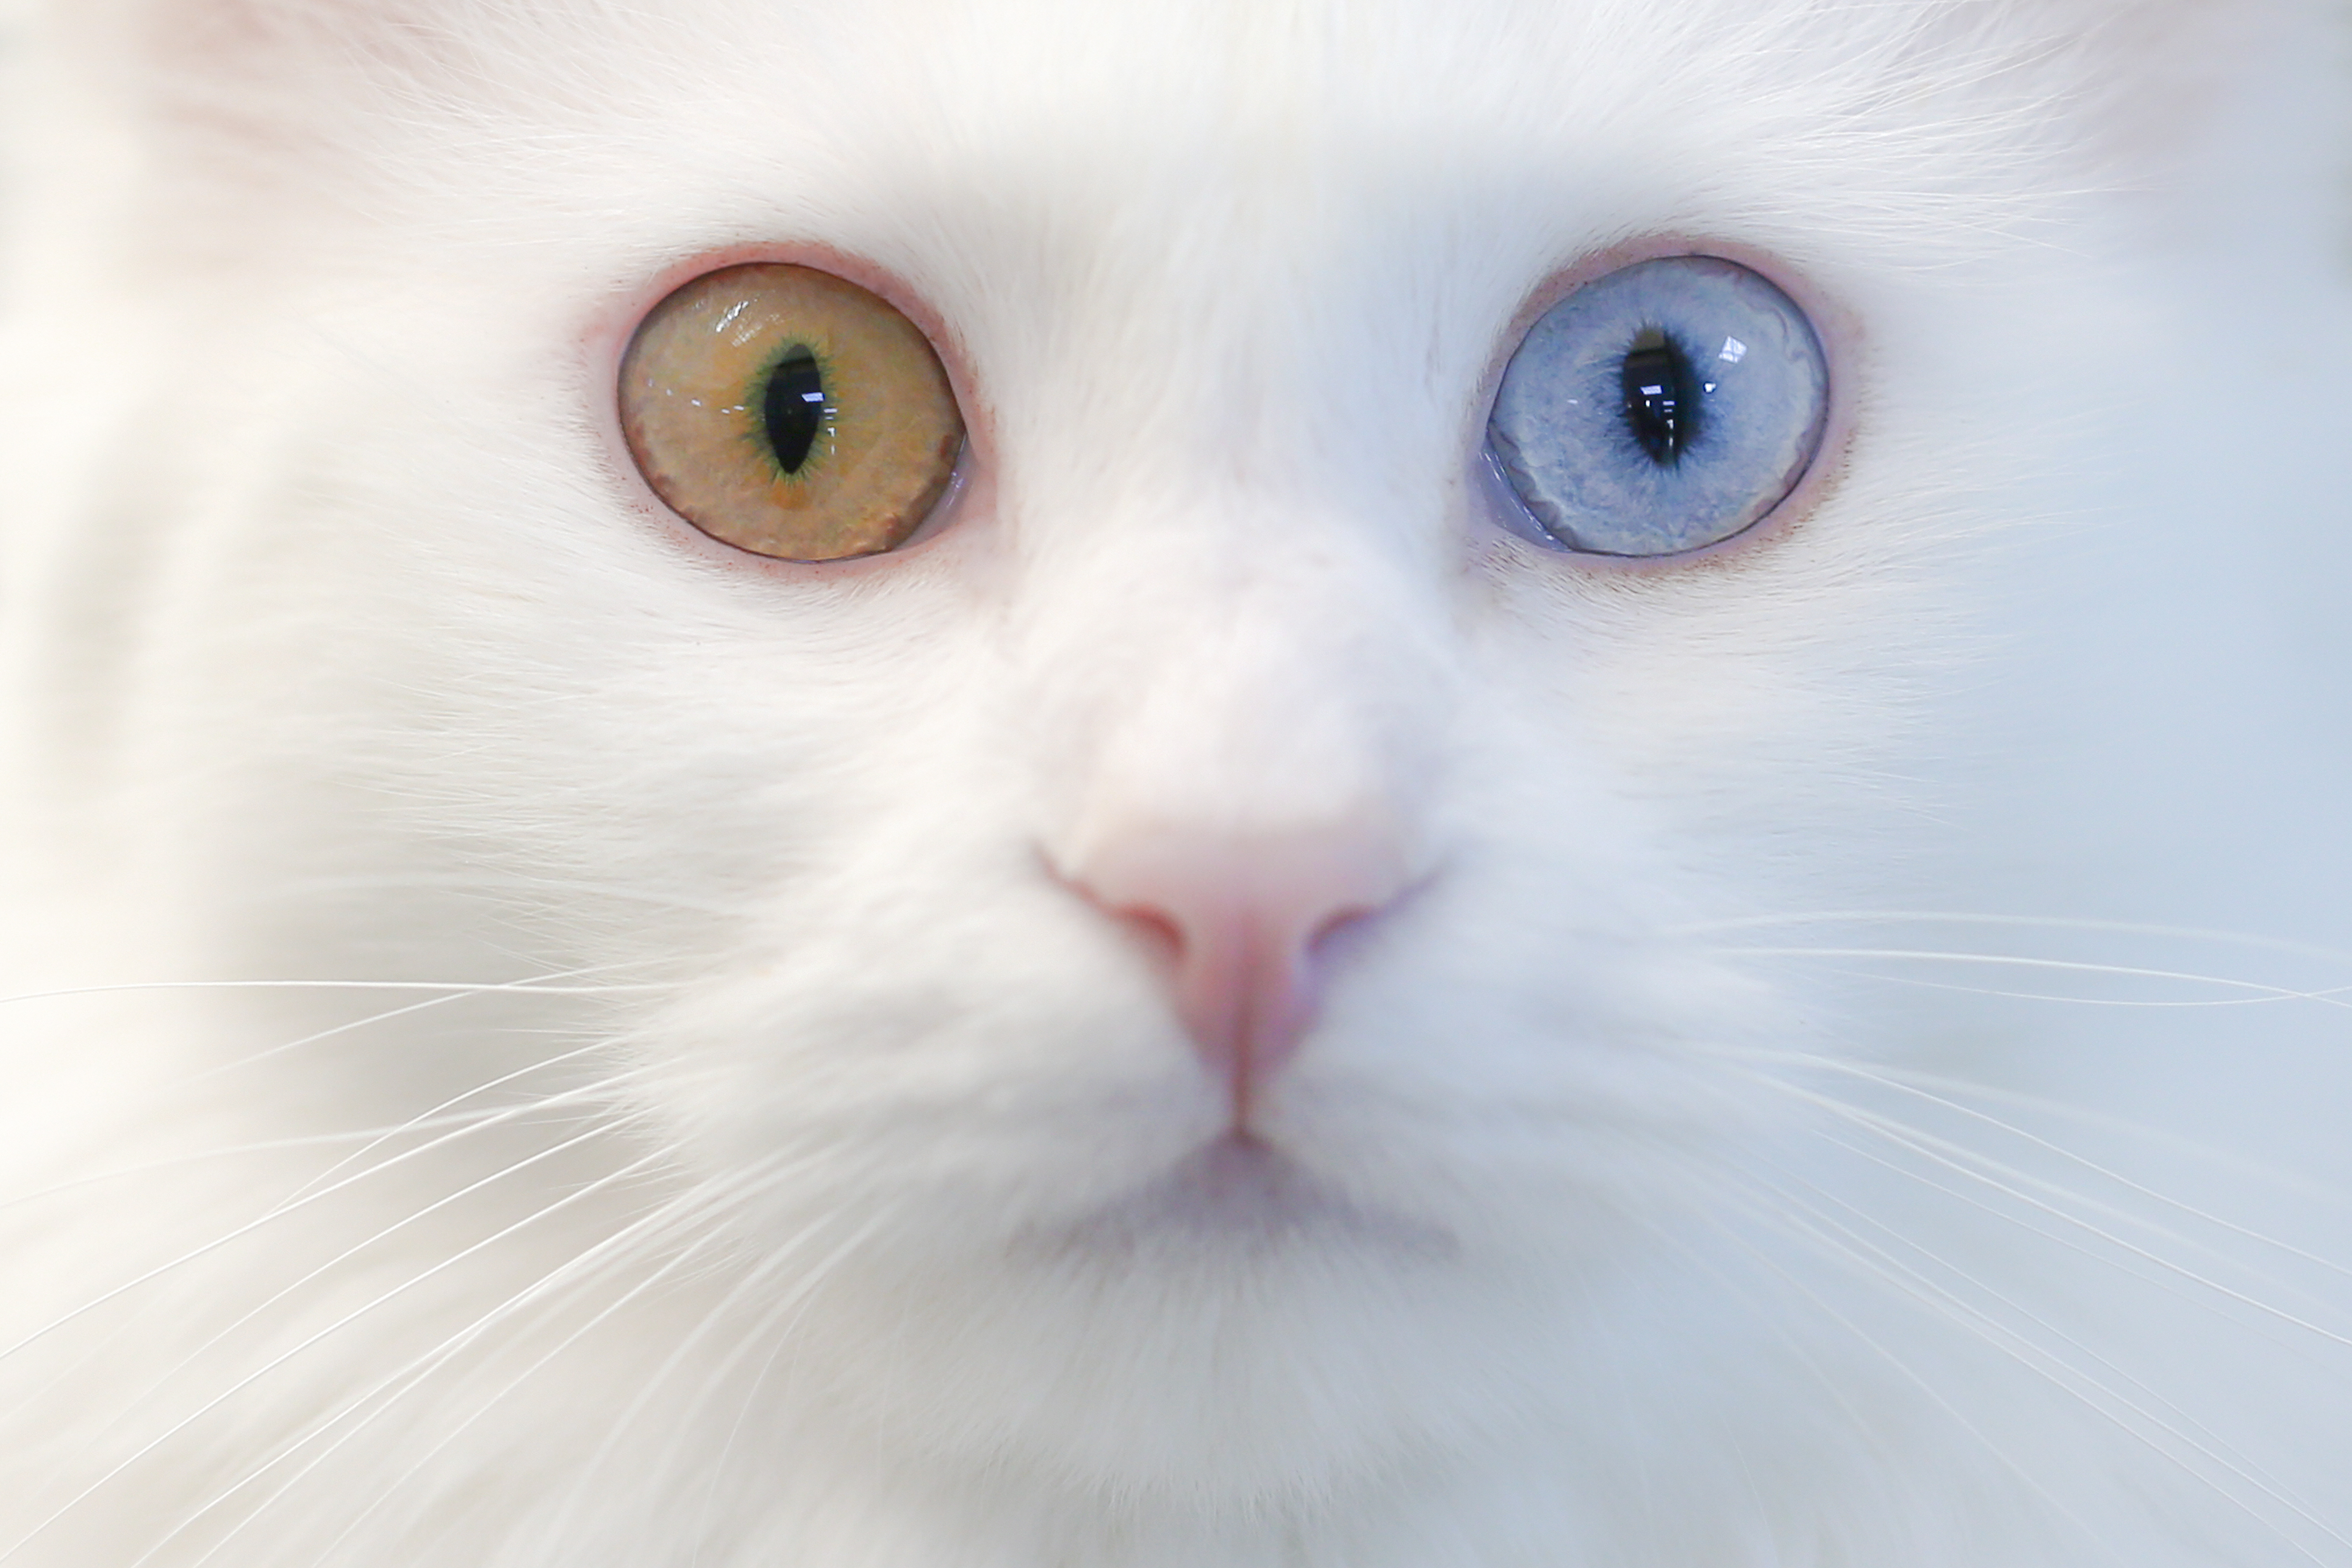 Вислоухий кот с гетерохромией